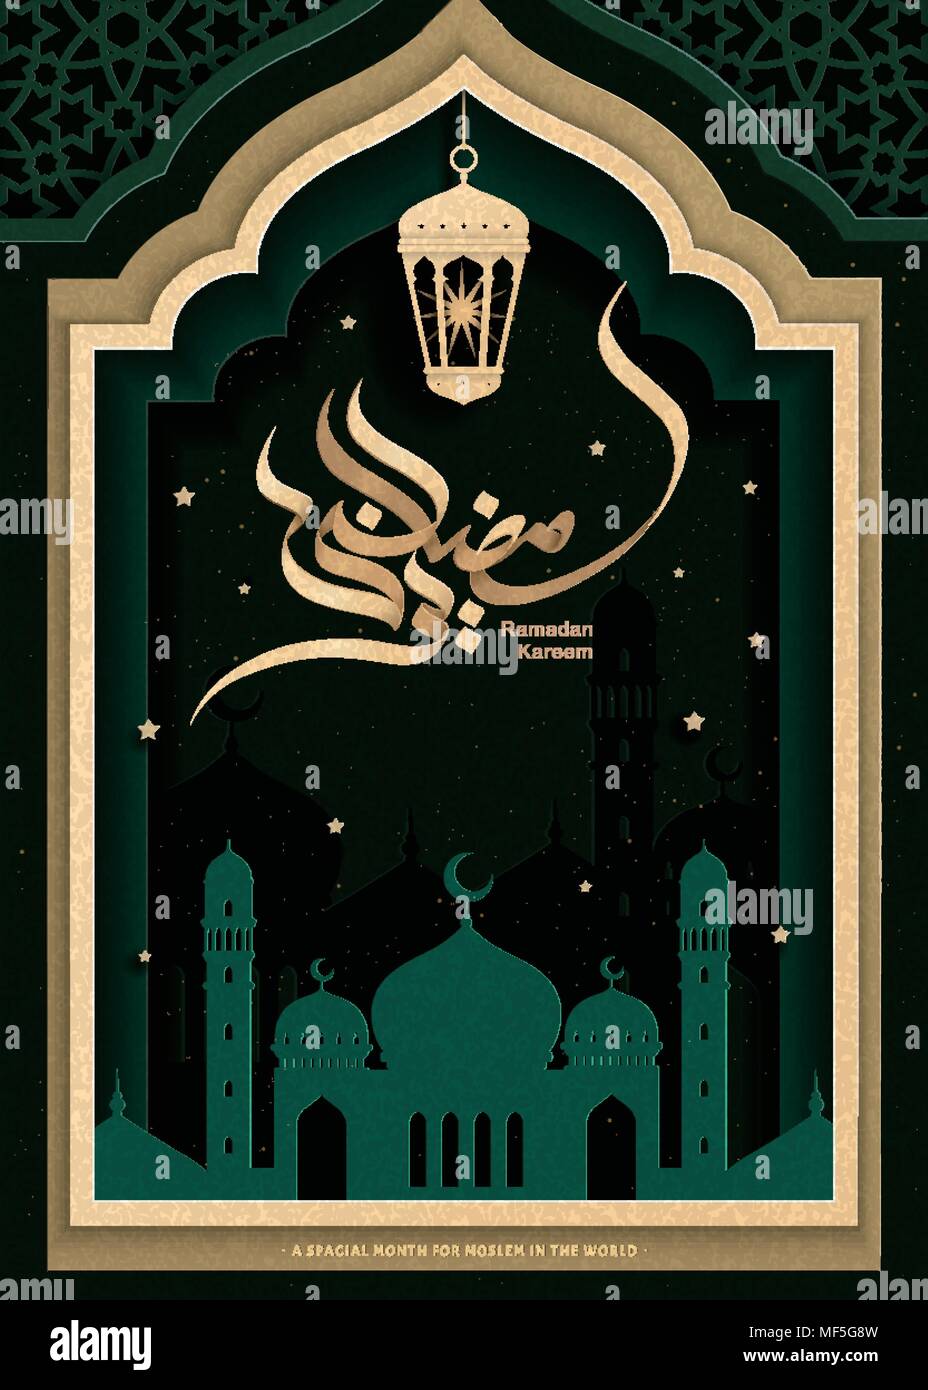 Ramadan Kareem élégante calligraphie sur fond vert noirâtre, bâti en arc avec nuit scène mosquée Illustration de Vecteur